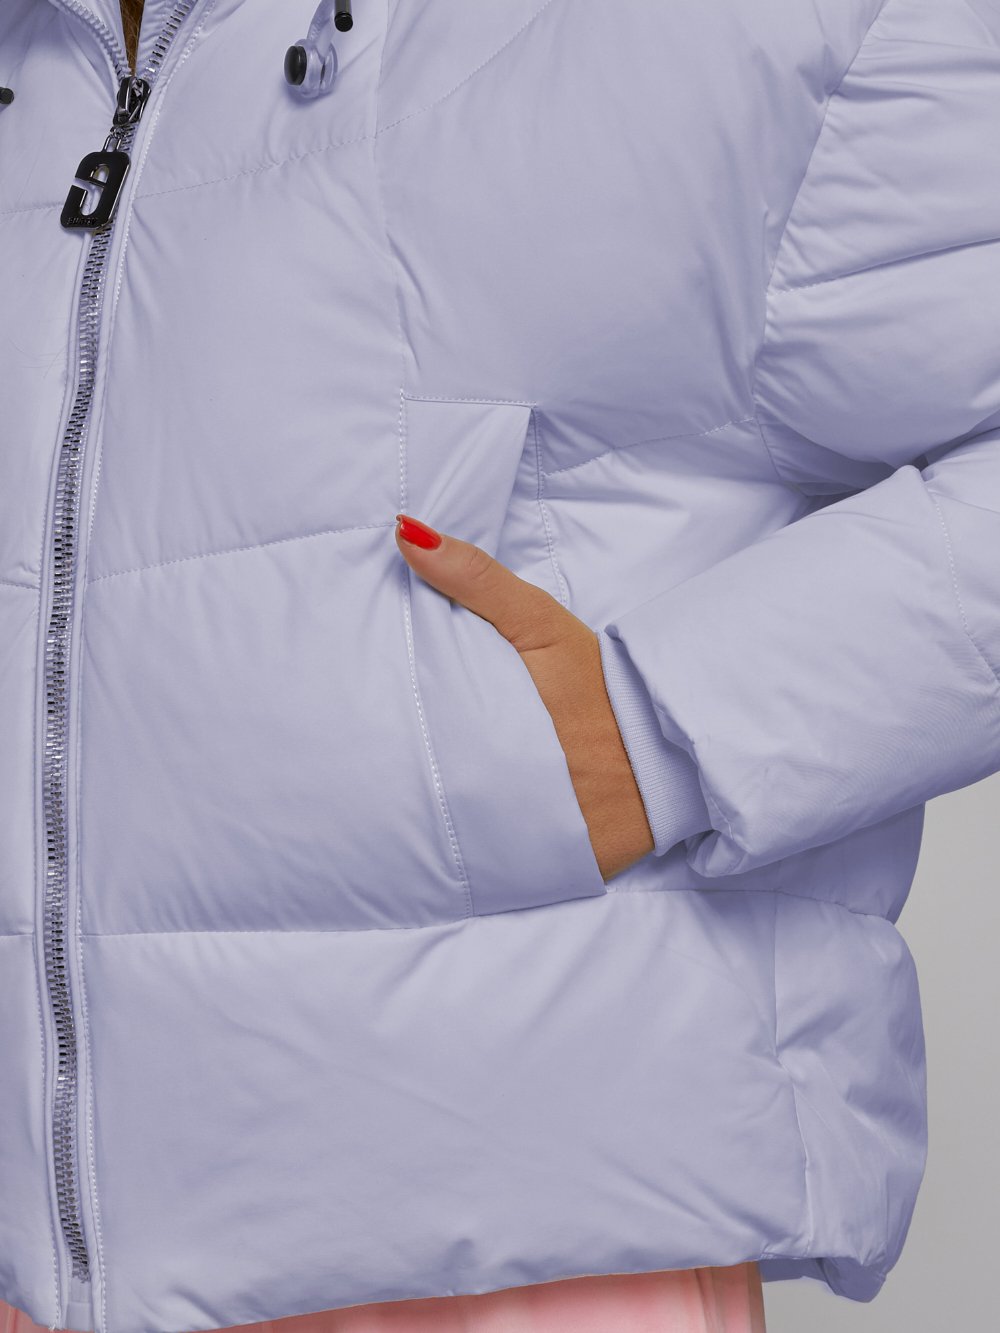 Купить куртку зимнюю оптом от производителя недорого в Москве 512305F 1